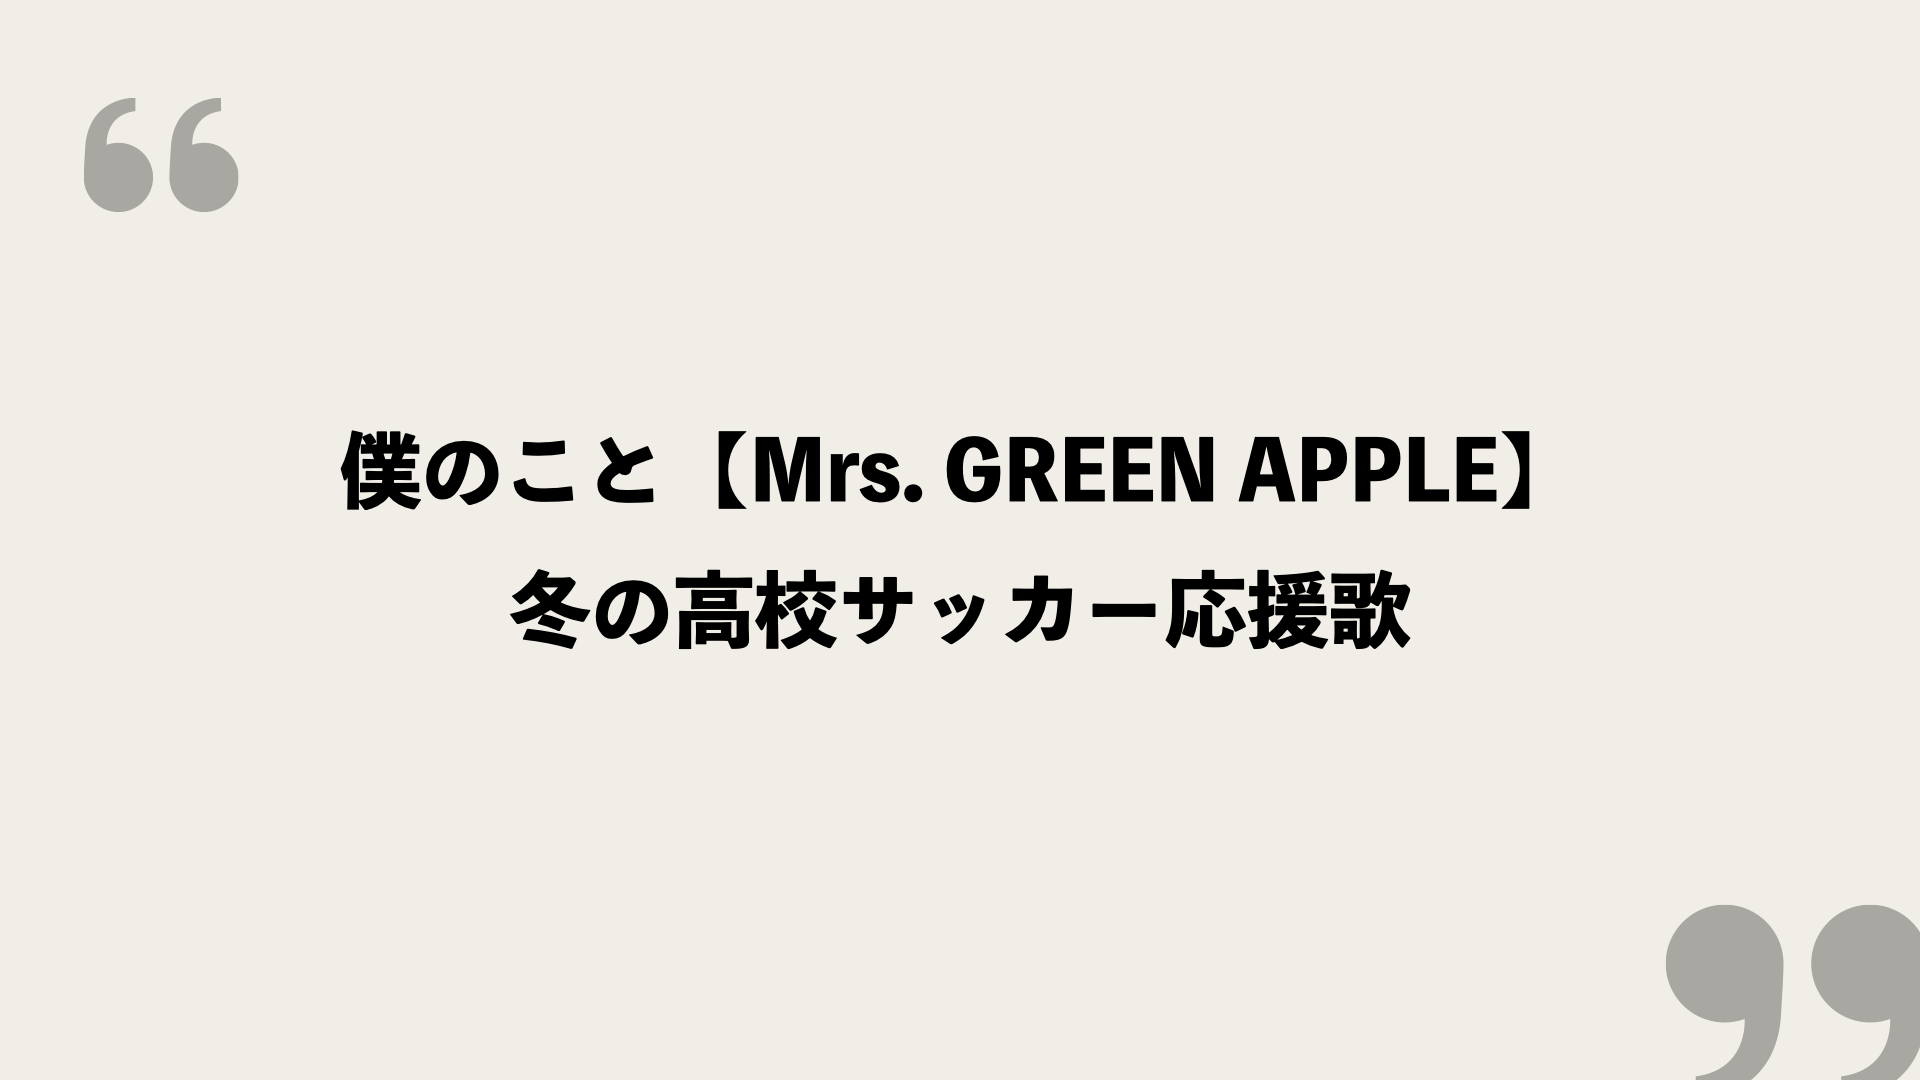 僕のこと Mrs Green Apple 歌詞の意味を考察 冬の高校サッカー応援歌 Framu Media